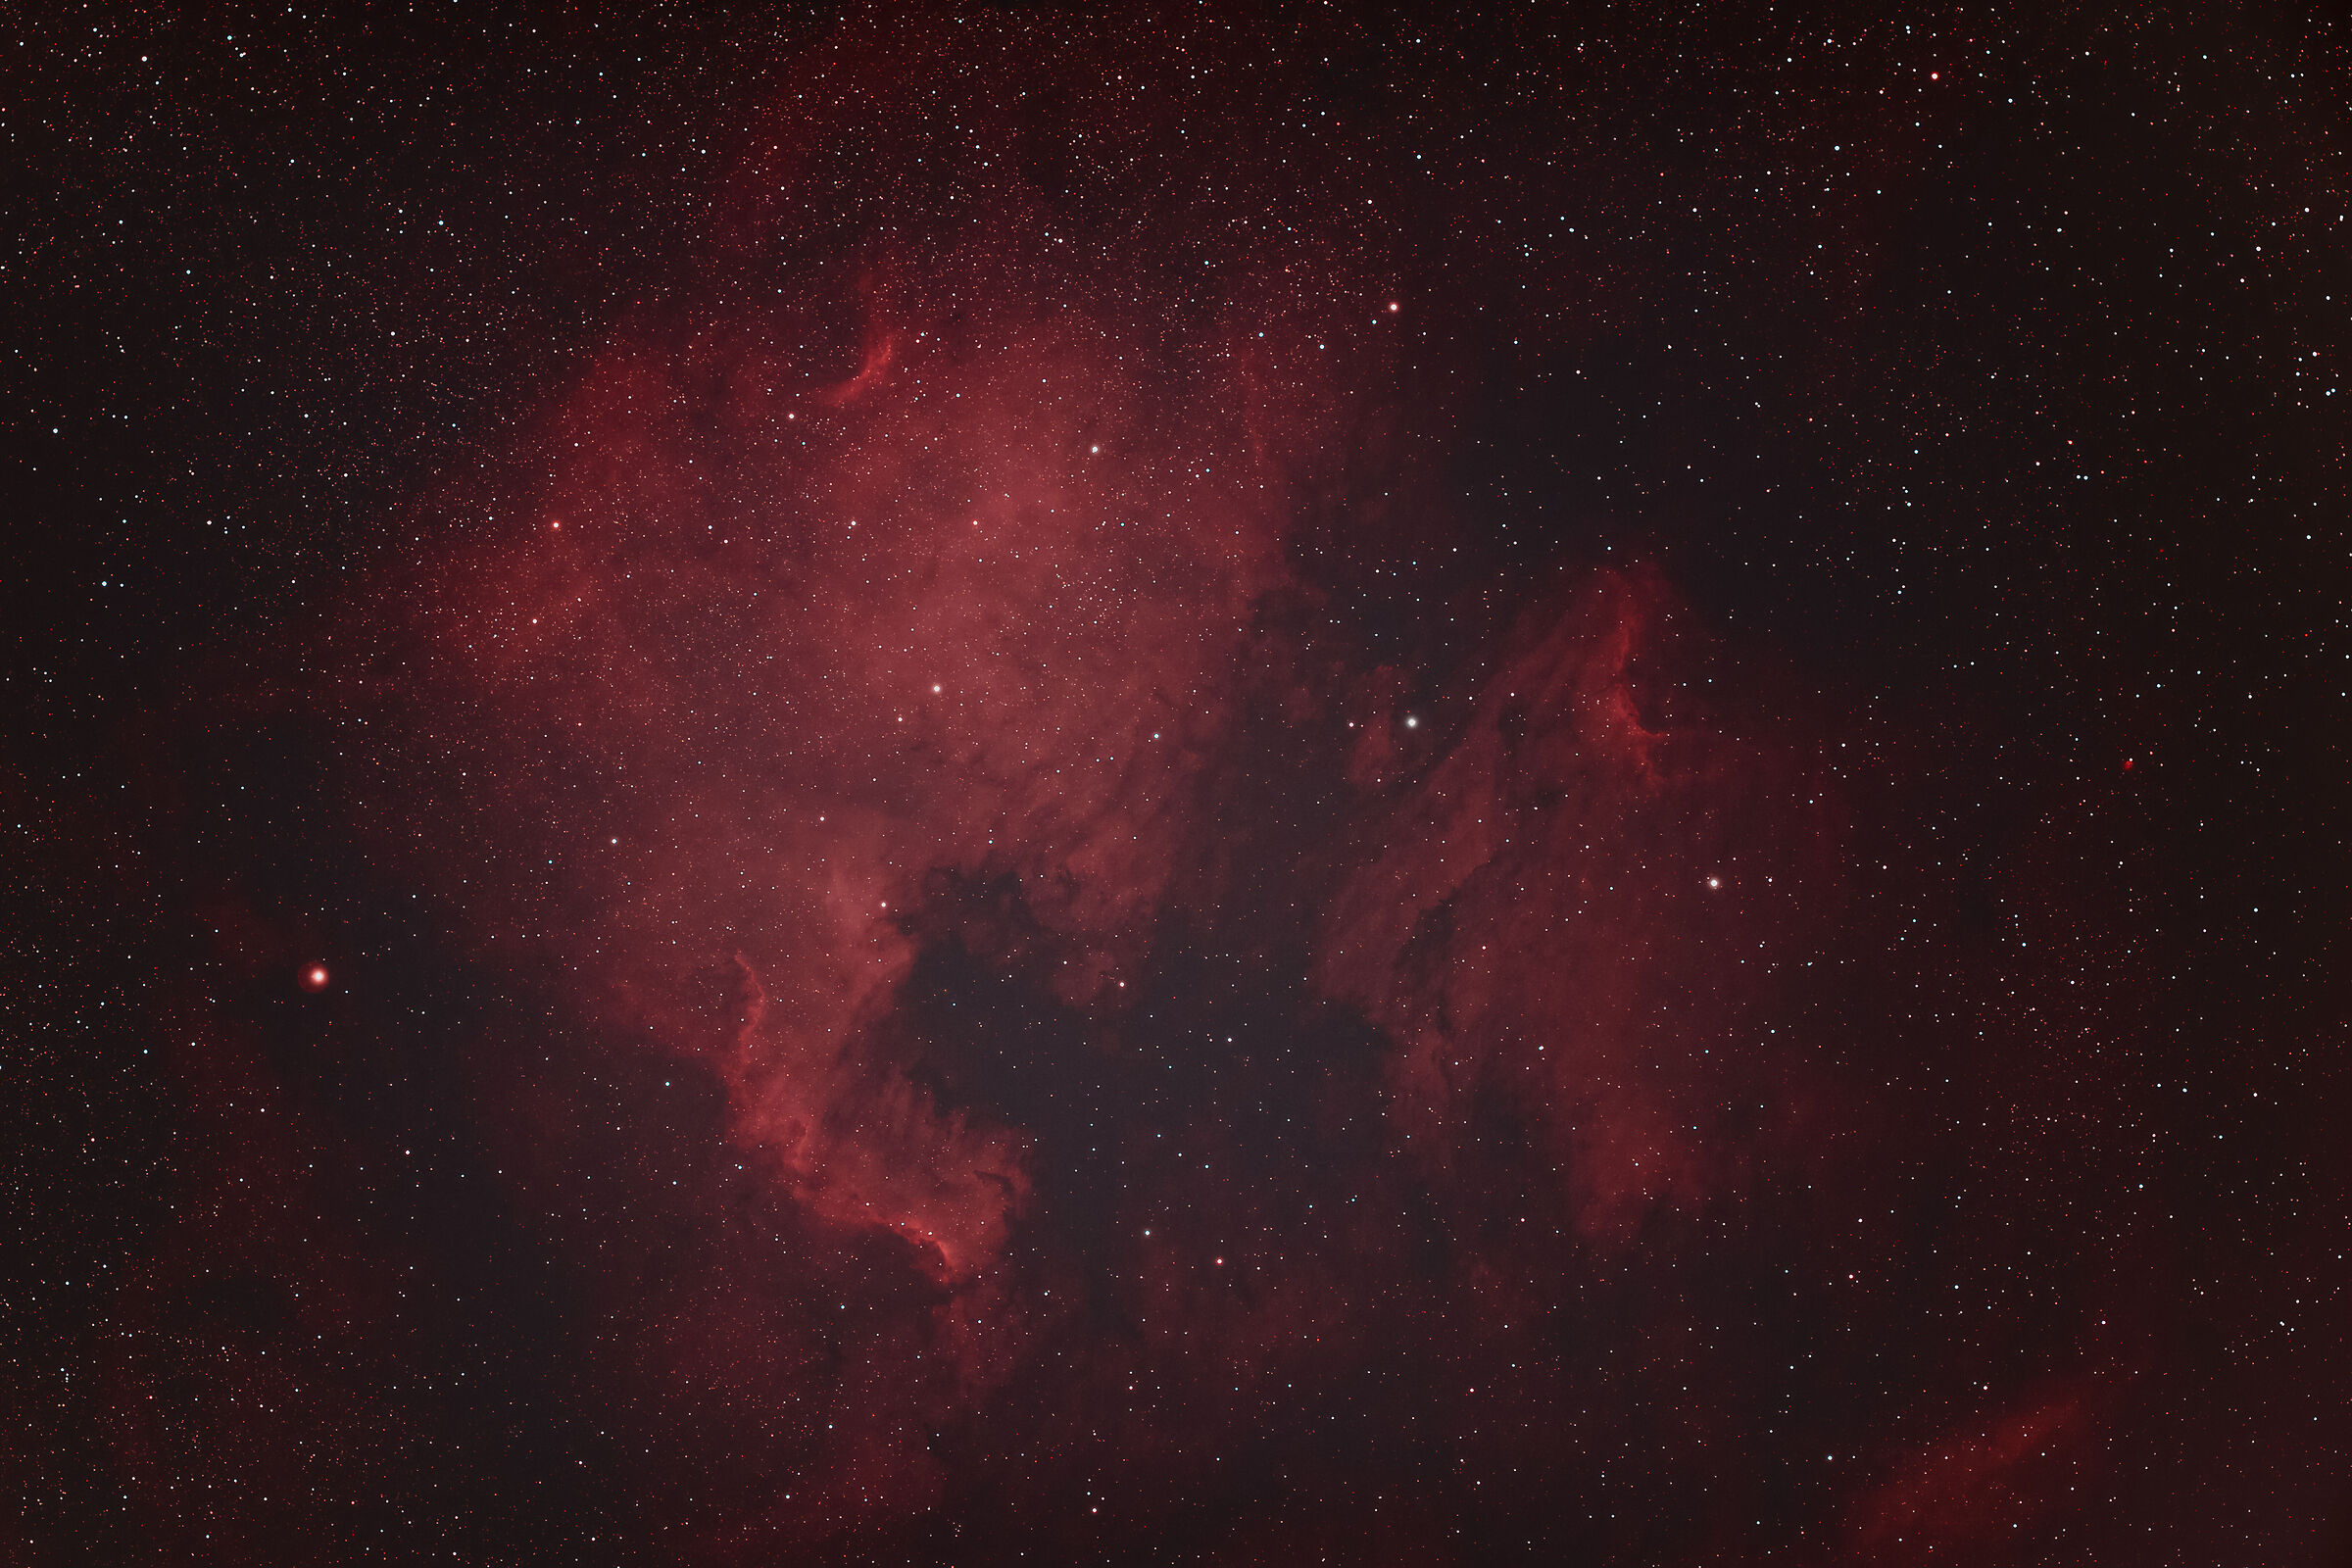 NGC 7000 North America Nebula & IC 5070 Skin Nebula...